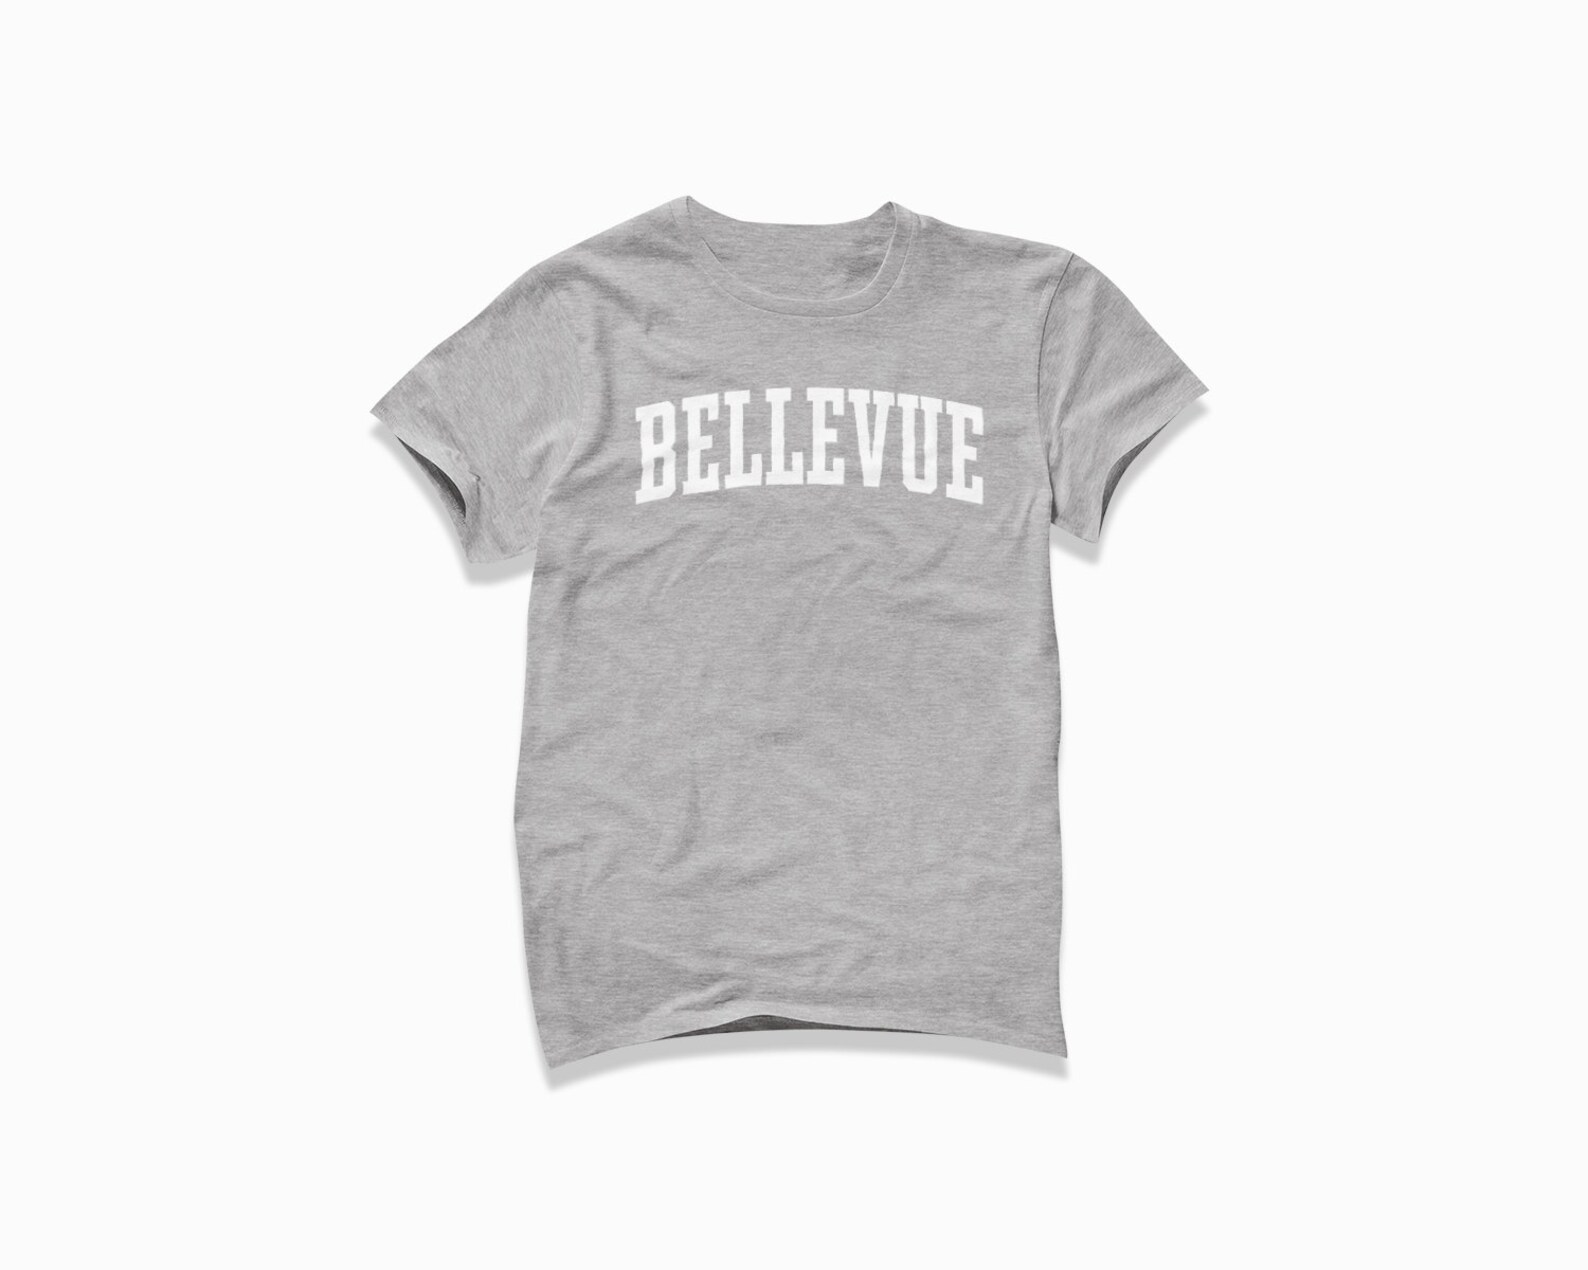 Bellevue Shirt: Bellevue T-shirt / College Style T Shirt / - Etsy UK